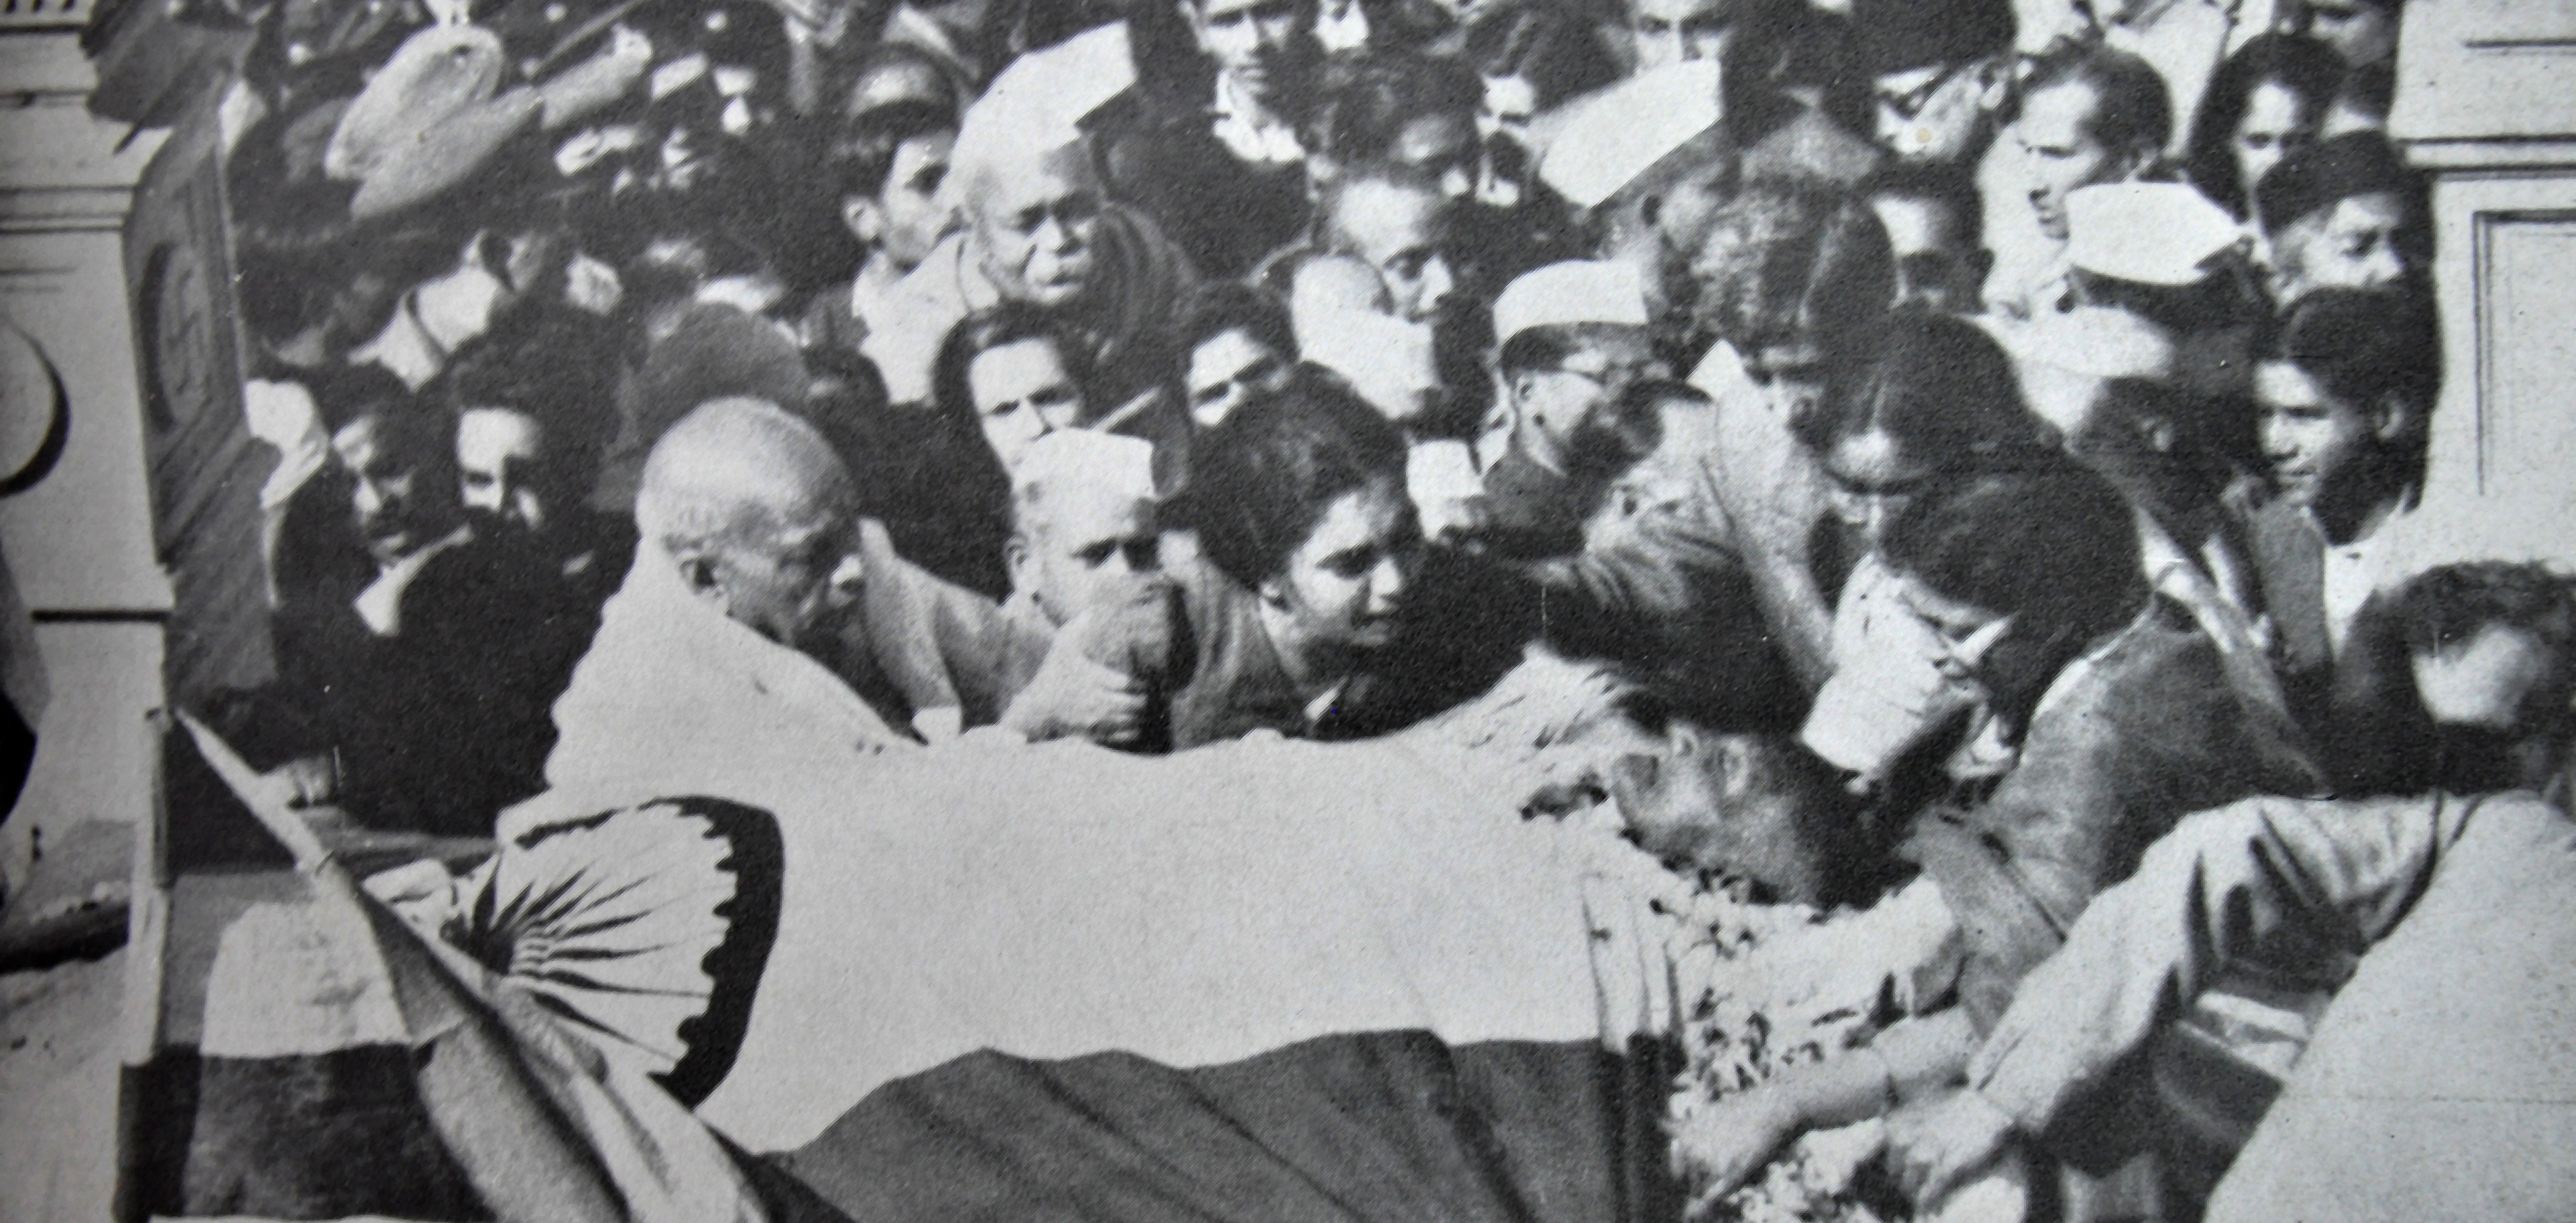 At Mahatma Gandhi's death